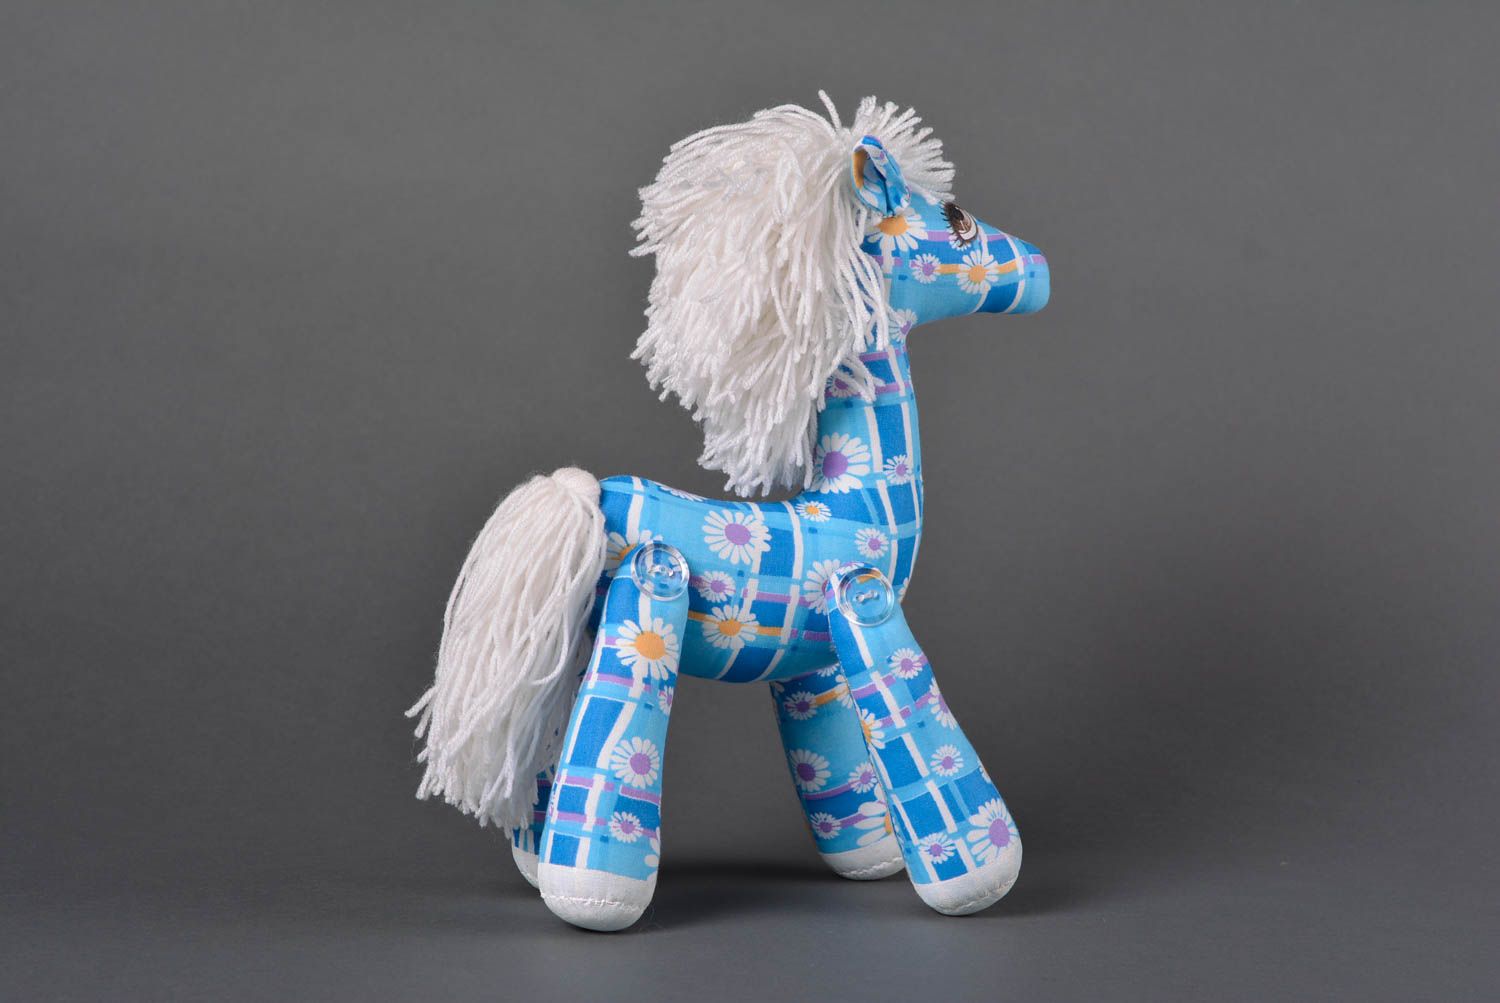 Игрушка лошадка ручной работы детская игрушка расписанная акрилом мягкая игрушка фото 3